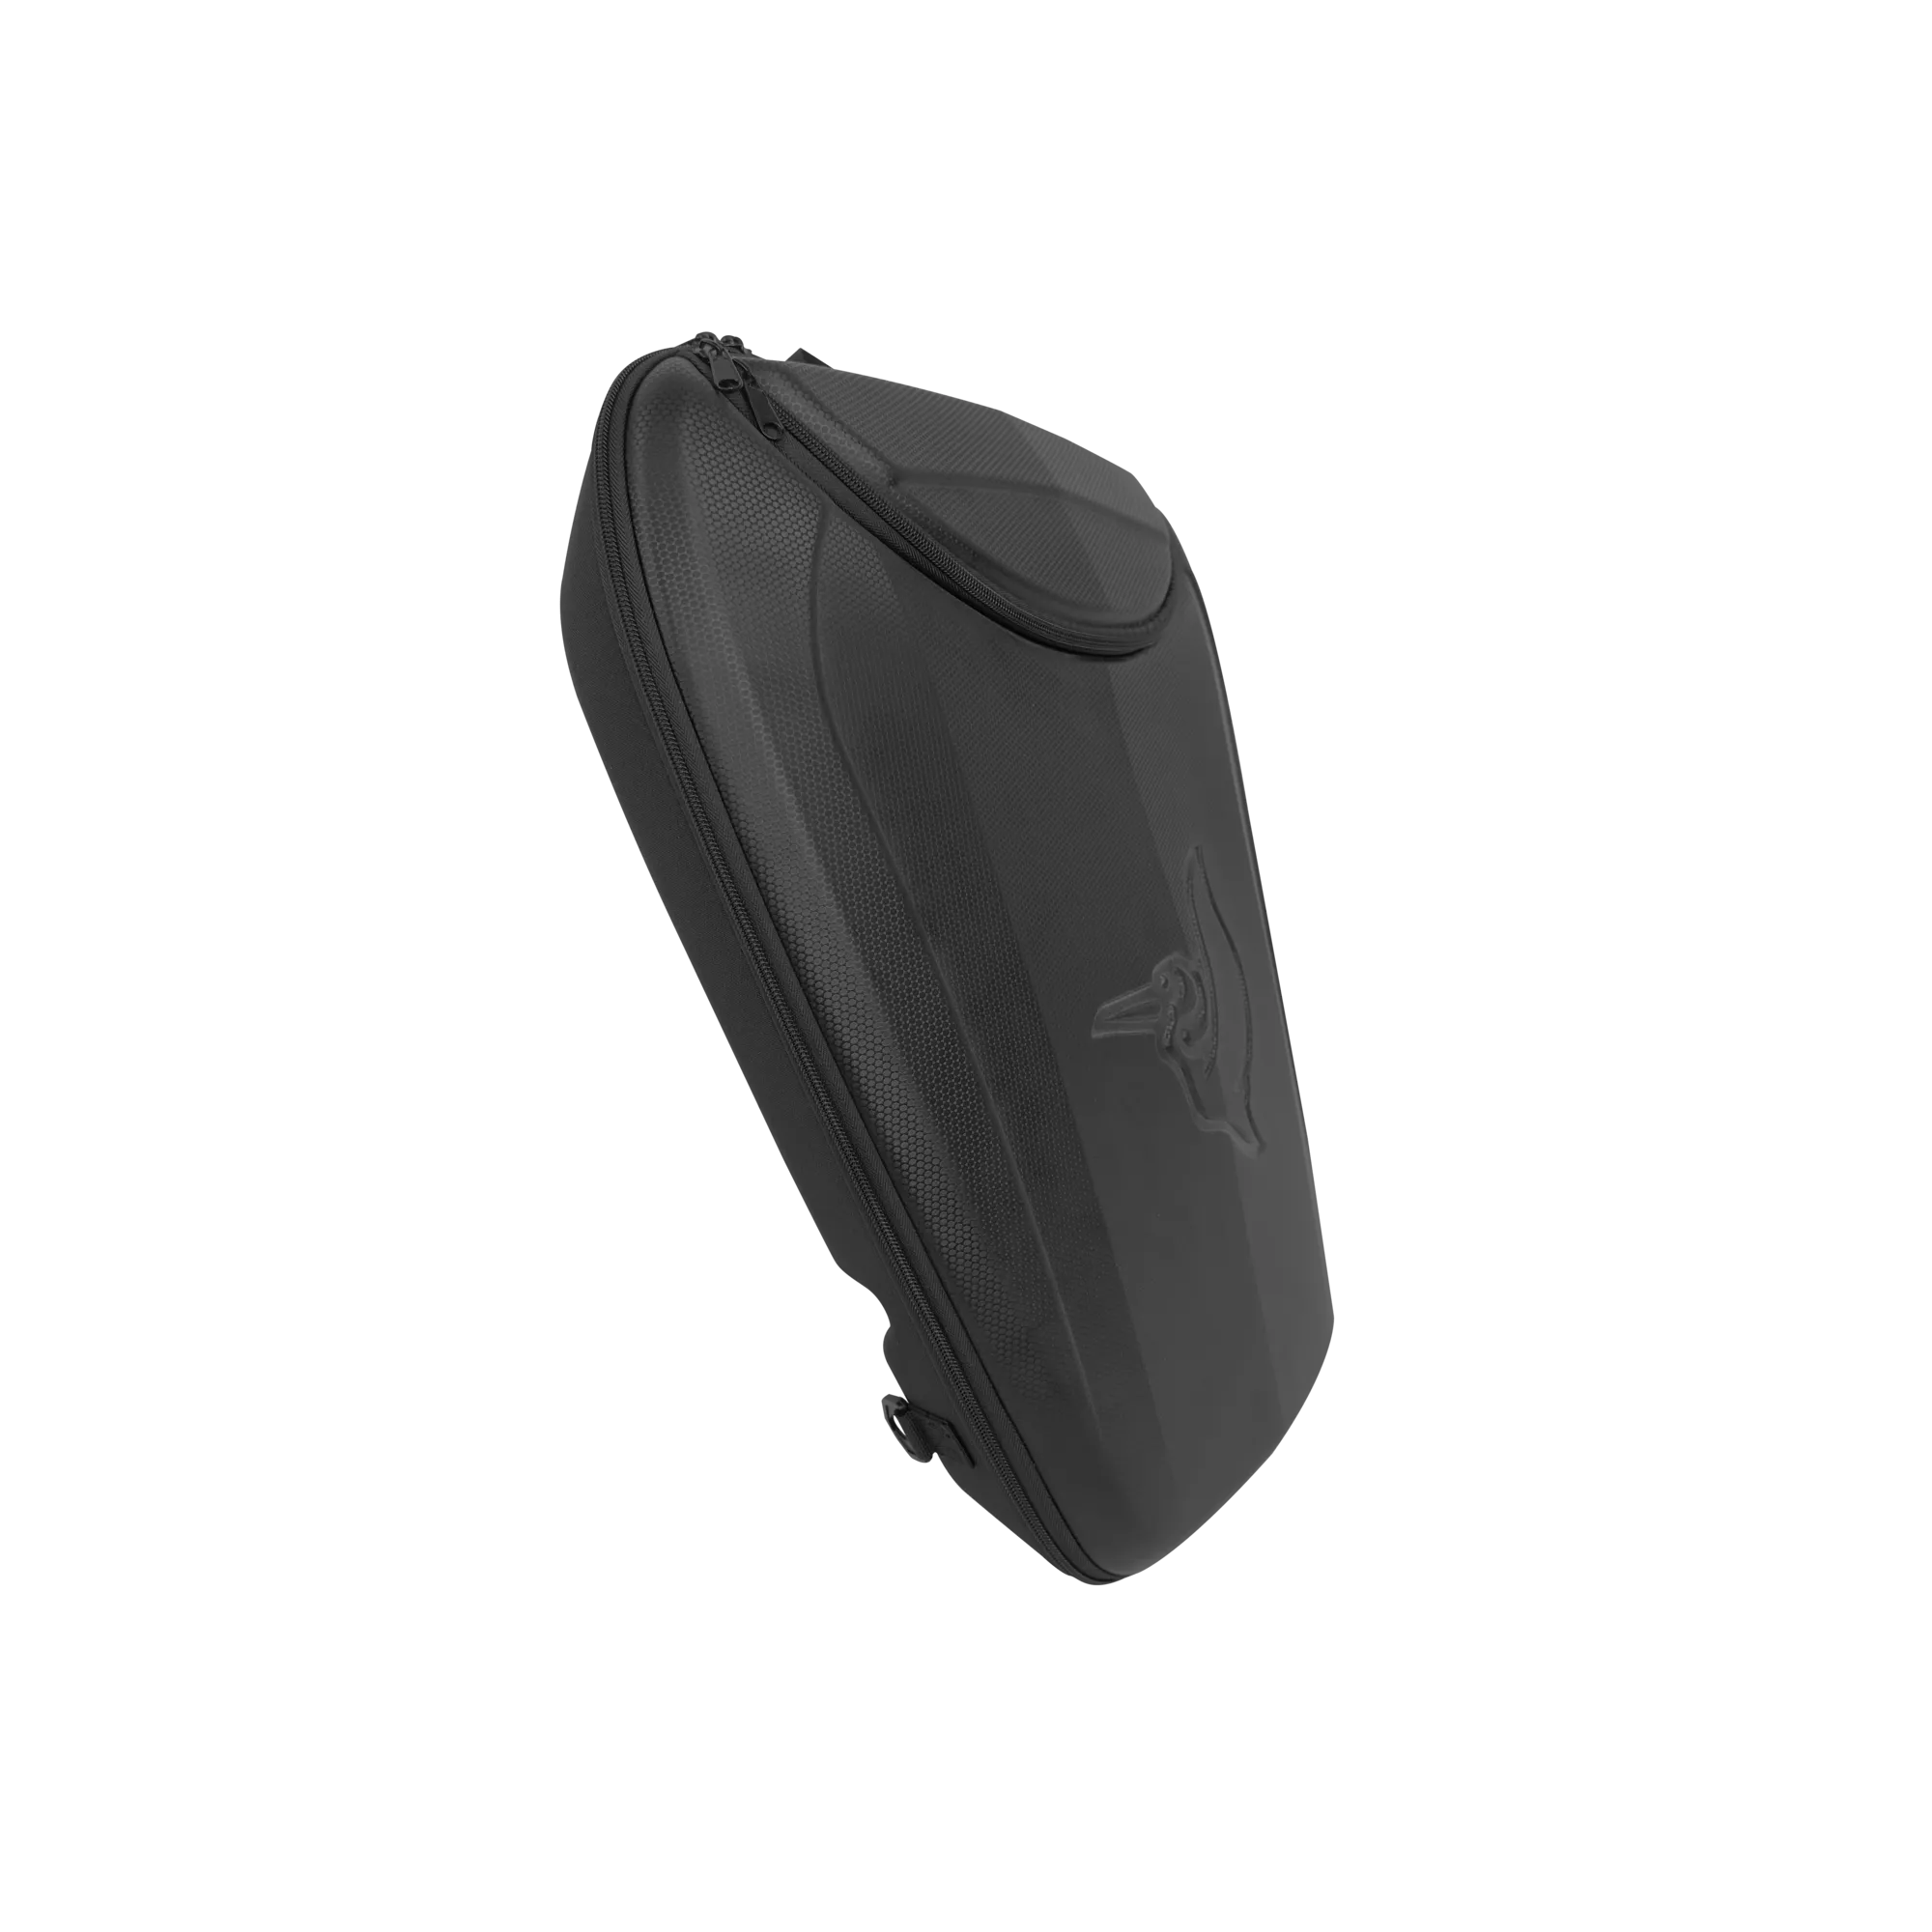 PELICAN - Compartiment de rangement Exopod de 24 L pour kayak - Black - PS1626 - ISO 